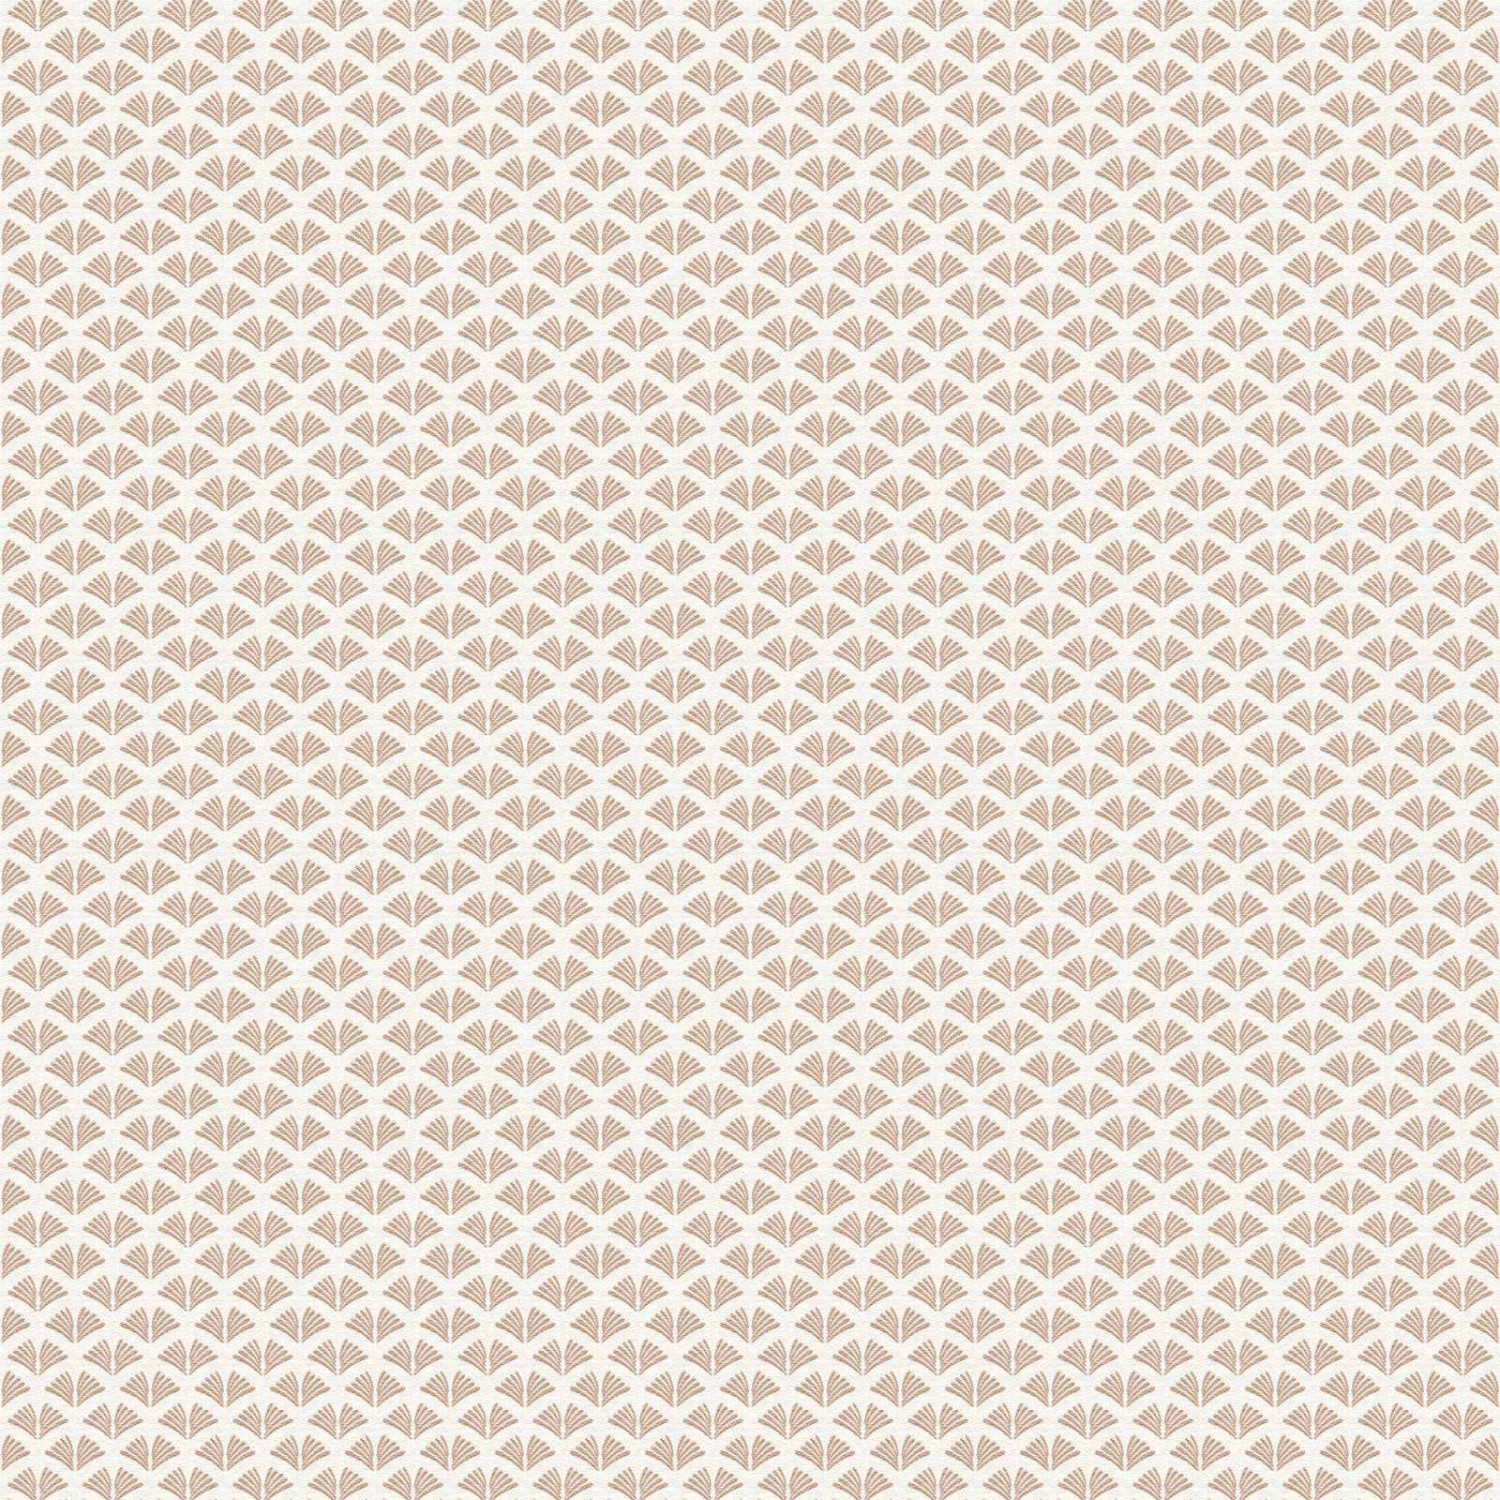 Bricoflor Metallic Tapete mit Ornament Art Deco Vliestapete in Weiß und Rosegold 20er Jahre Wandtapete Ideal für Wohnzimmer und Esszimmer von Bricoflor